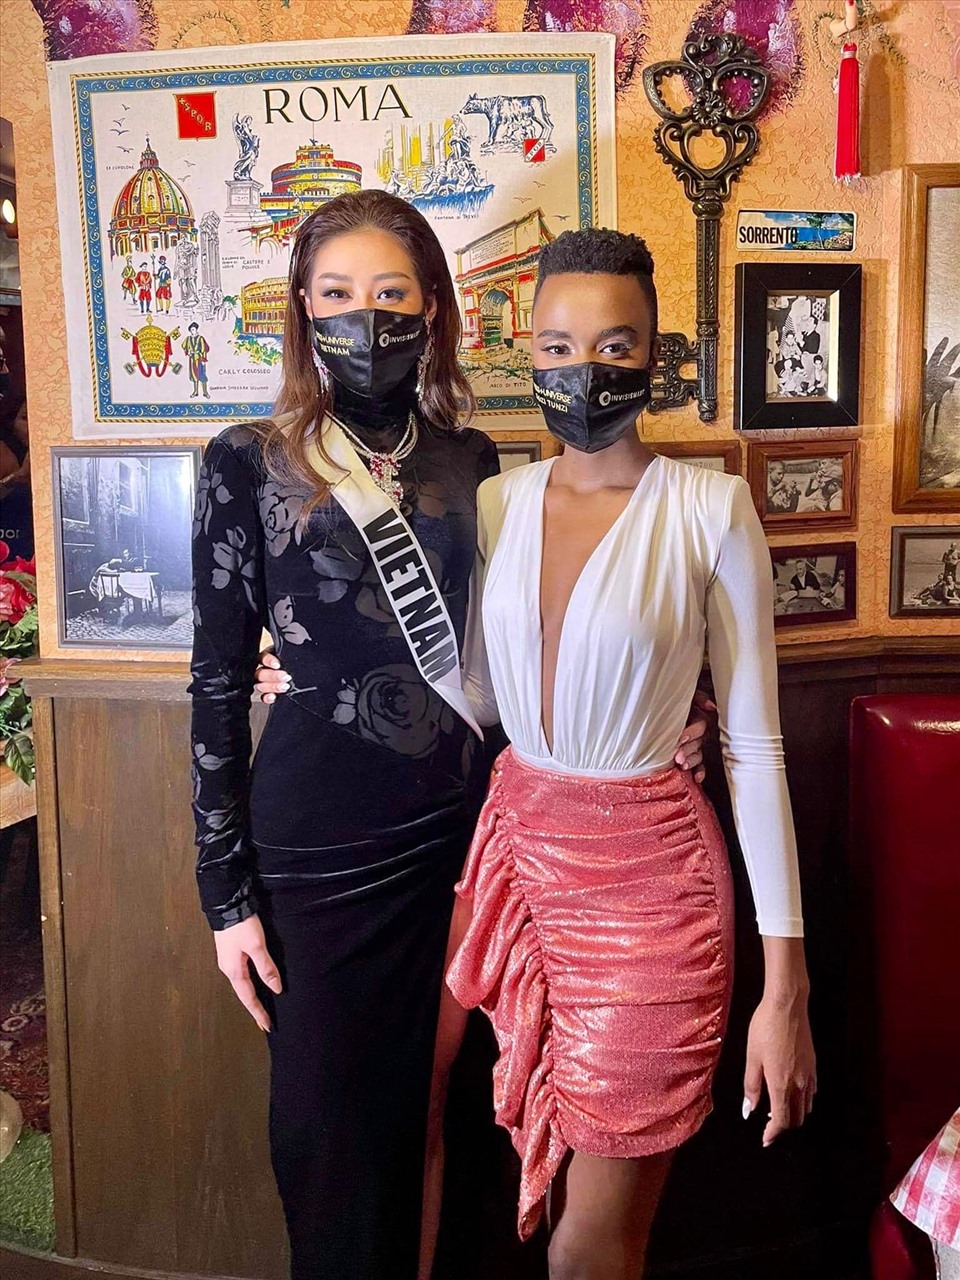 Khánh Vân chụp cùng Zozibini Tunzi - Đương kim Miss Universe. Cô nàng tạo được nhiều thiện cảm với các bạn thi nhờ tính cách hoà đồng, thân thiện. Ảnh: FBNV.